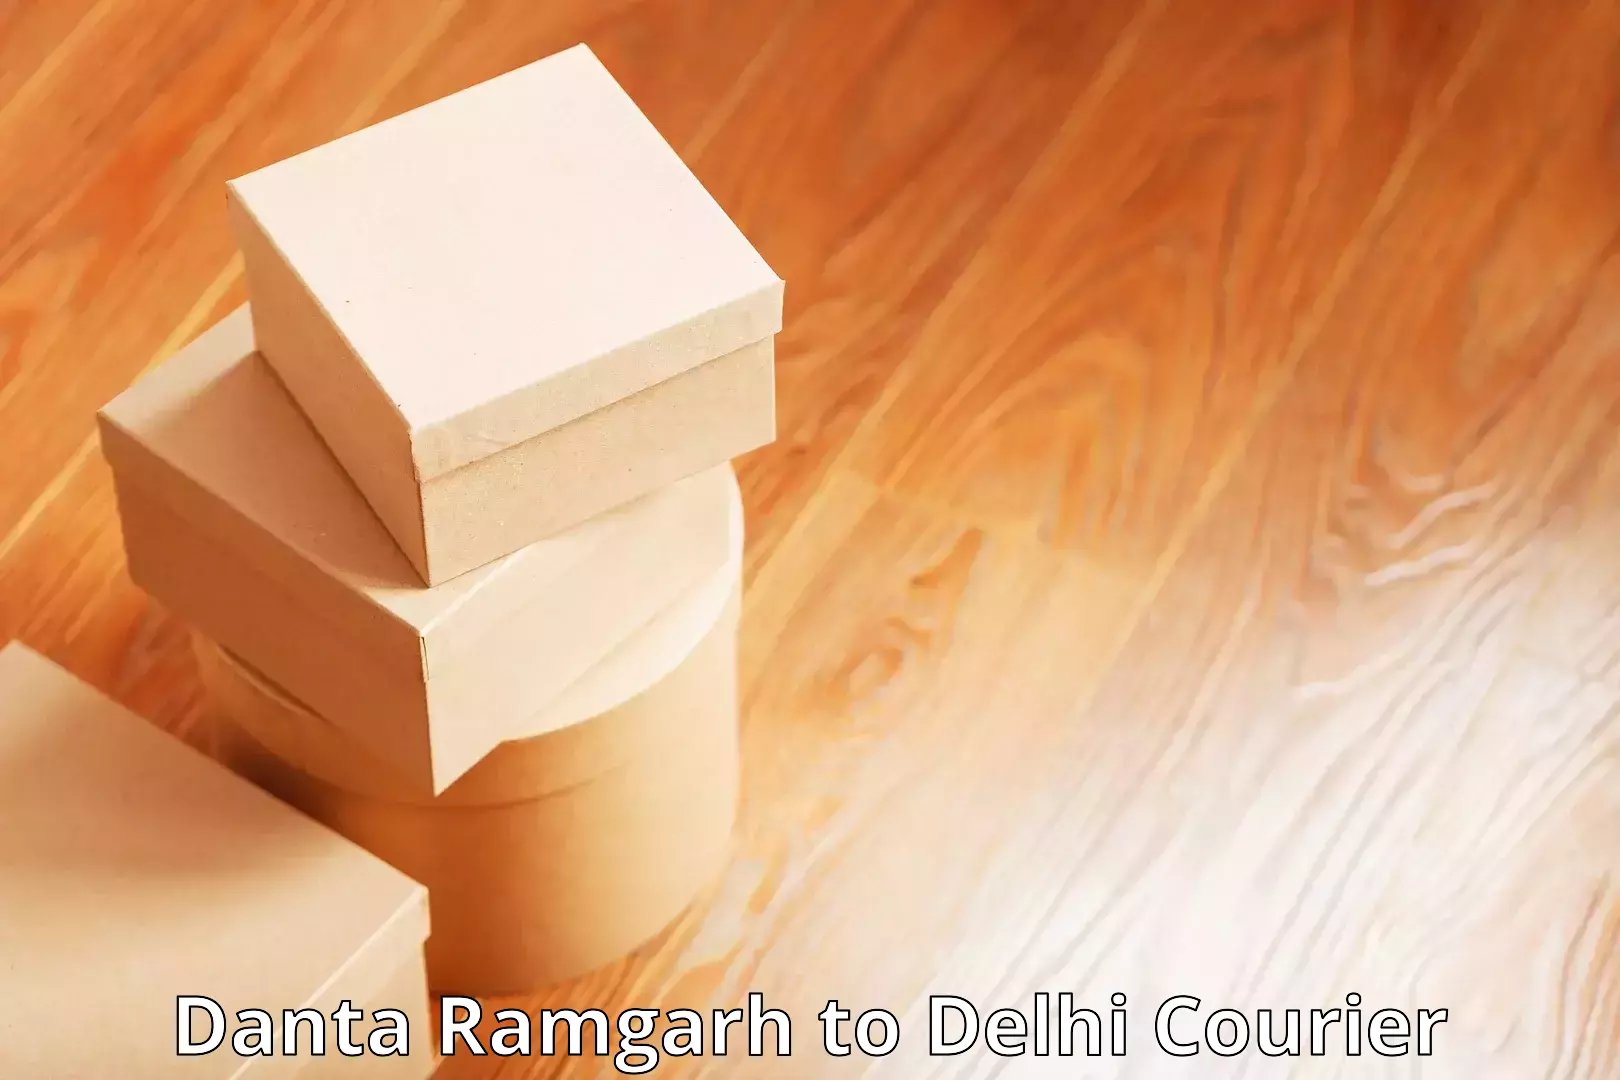 Courier service efficiency Danta Ramgarh to Delhi